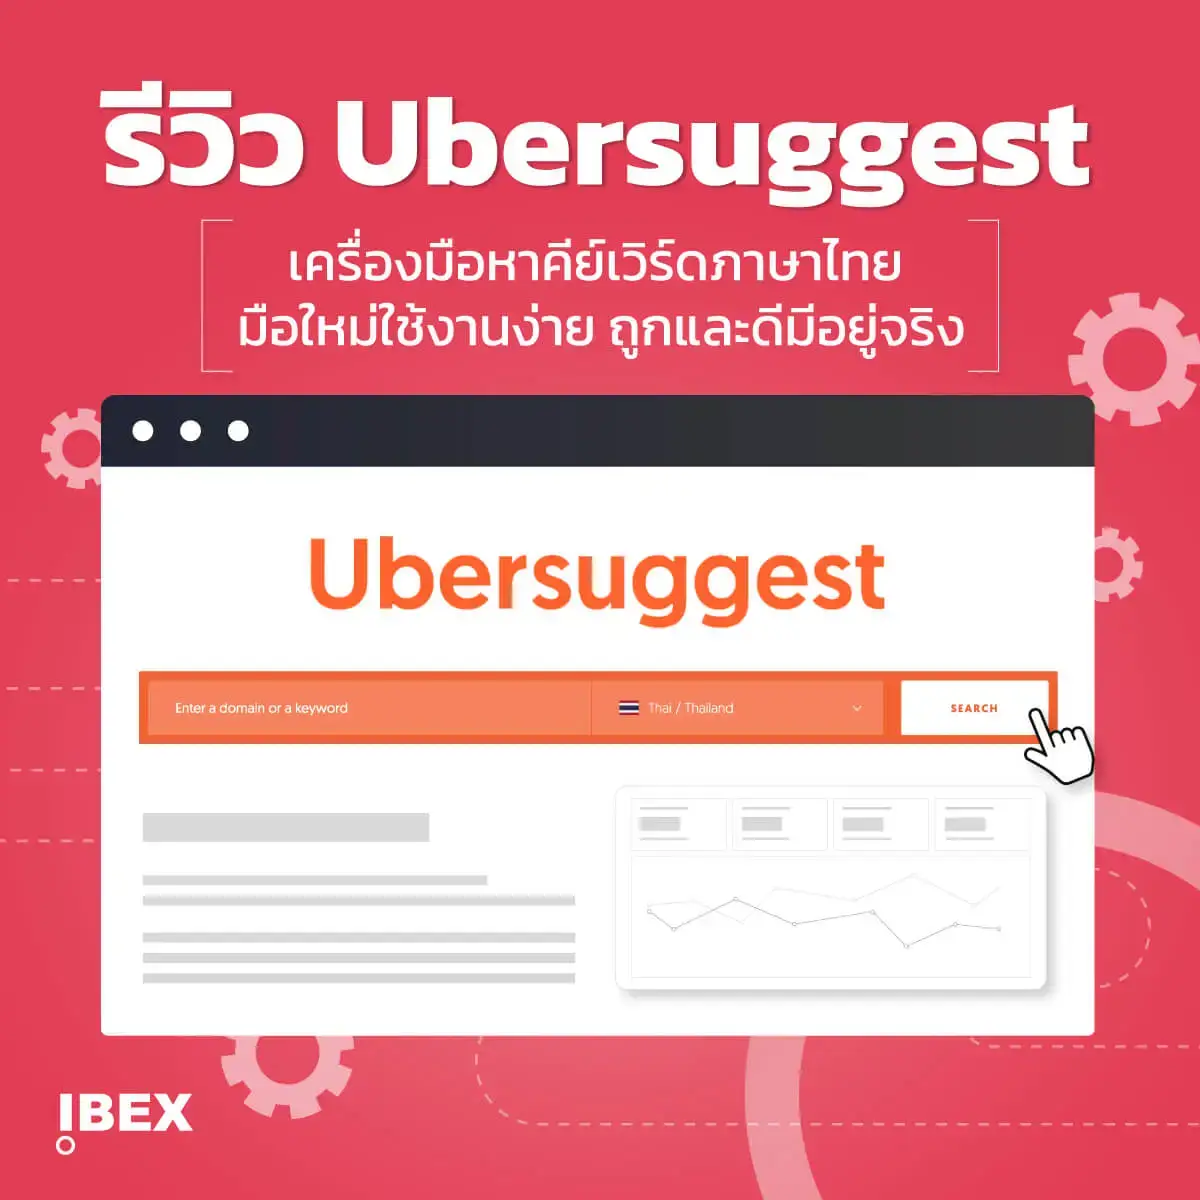 รีวิว Ubersuggest ตัวช่วยหาคีย์เวิร์ดภาษาไทย ใช้งานง่าย ถูกและดี